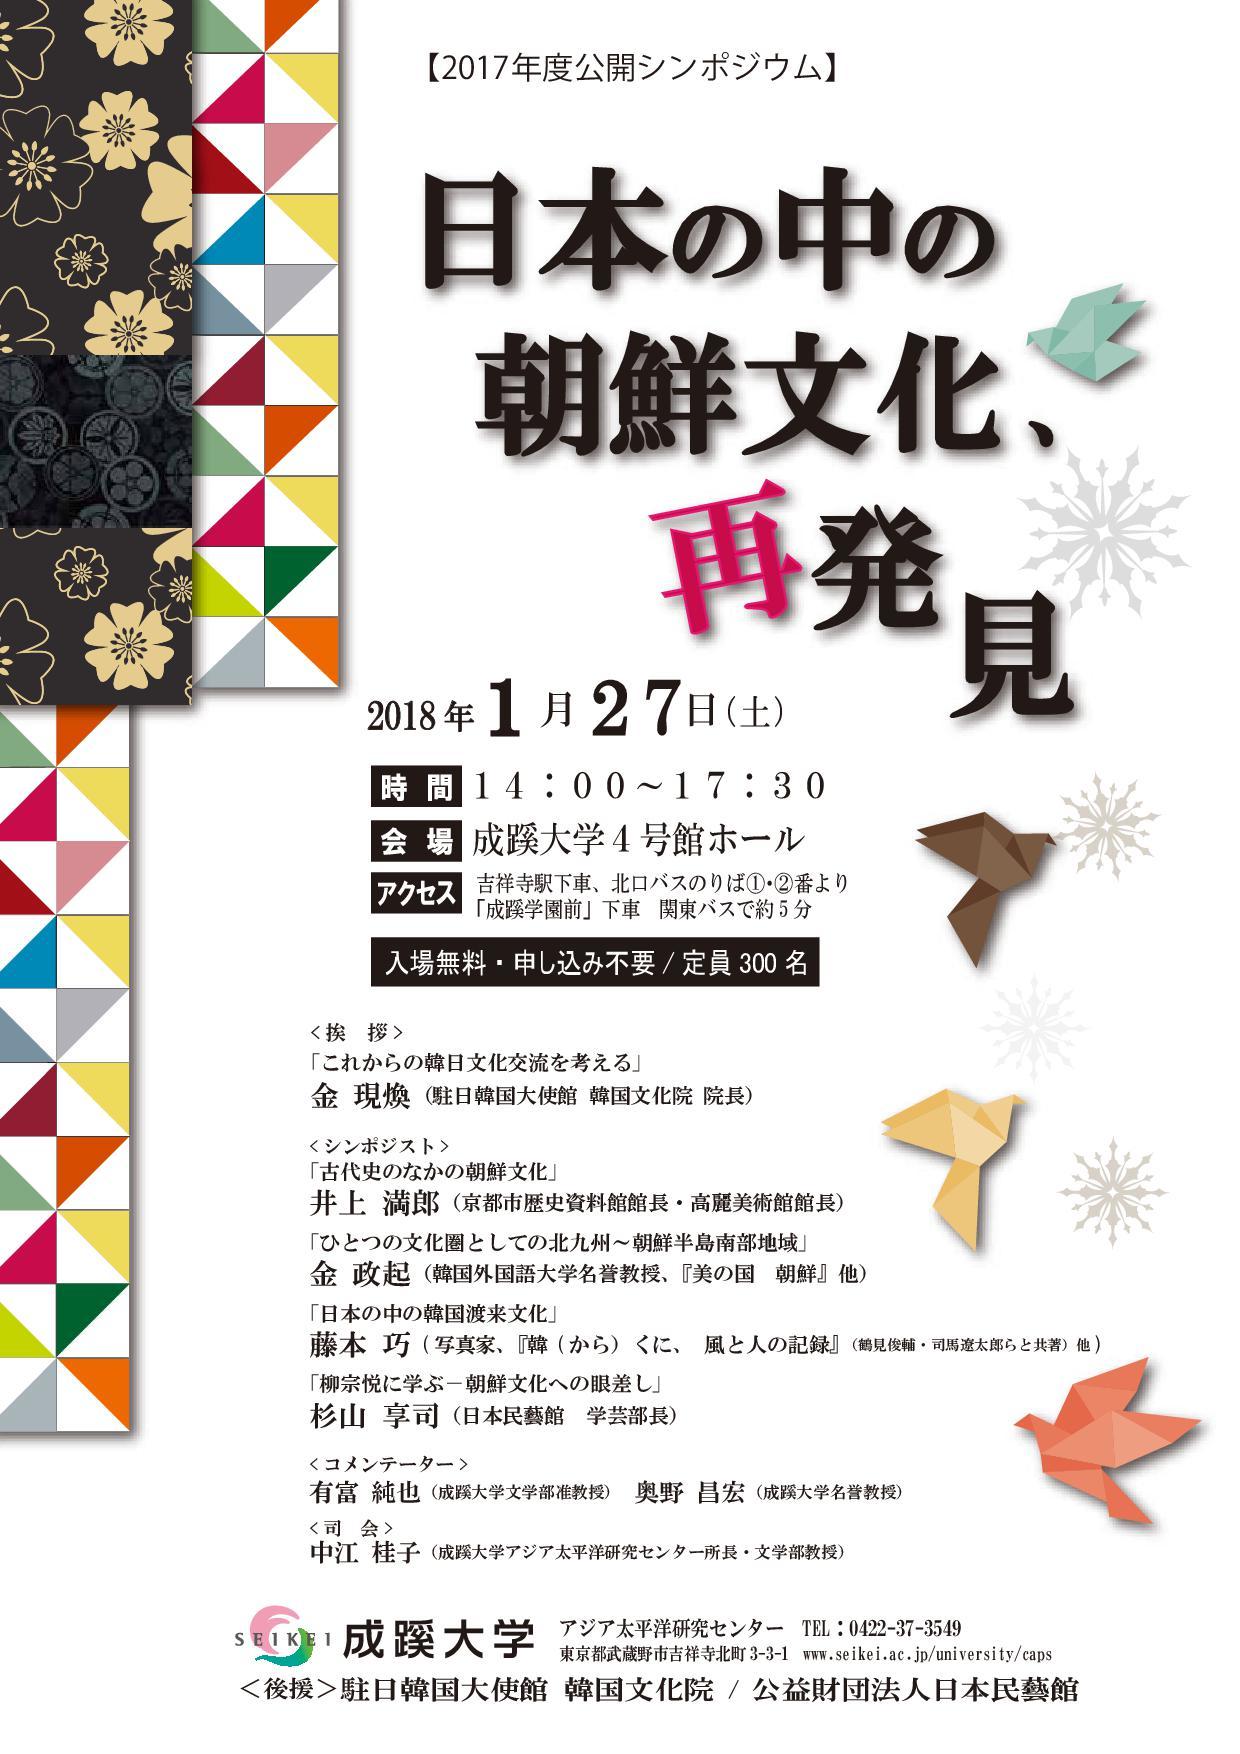 成蹊大学が1月27日に公開シンポジウム「日本の中の朝鮮文化、再発見」を開催